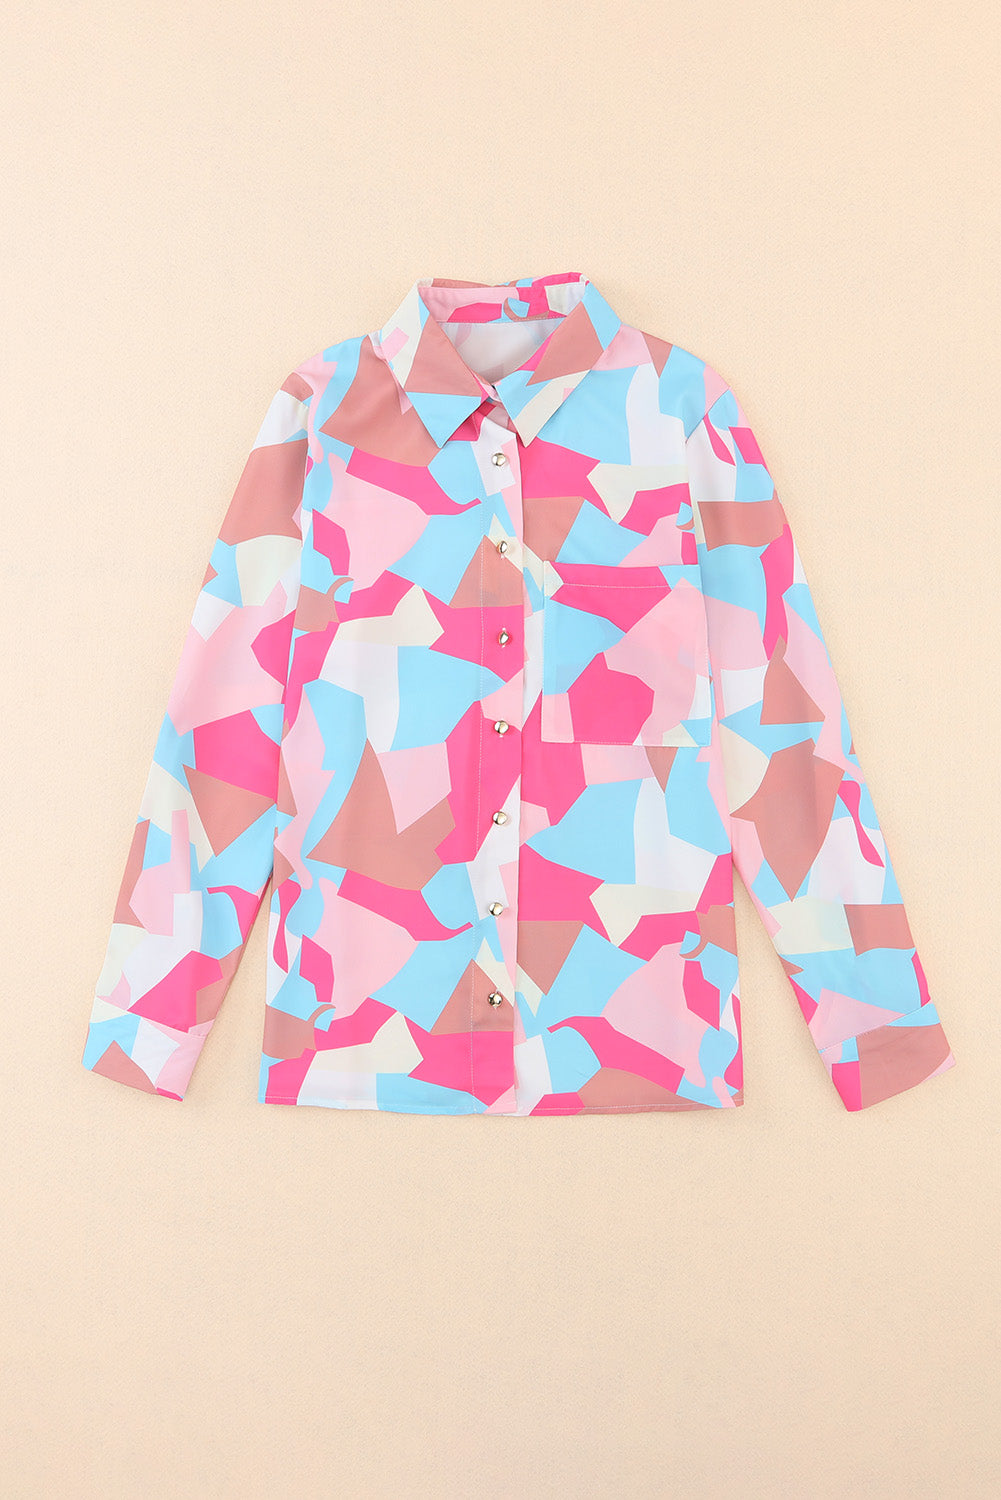 Rožnata srajca z rokavi z zavihki in potiskom geometrijskih blokov